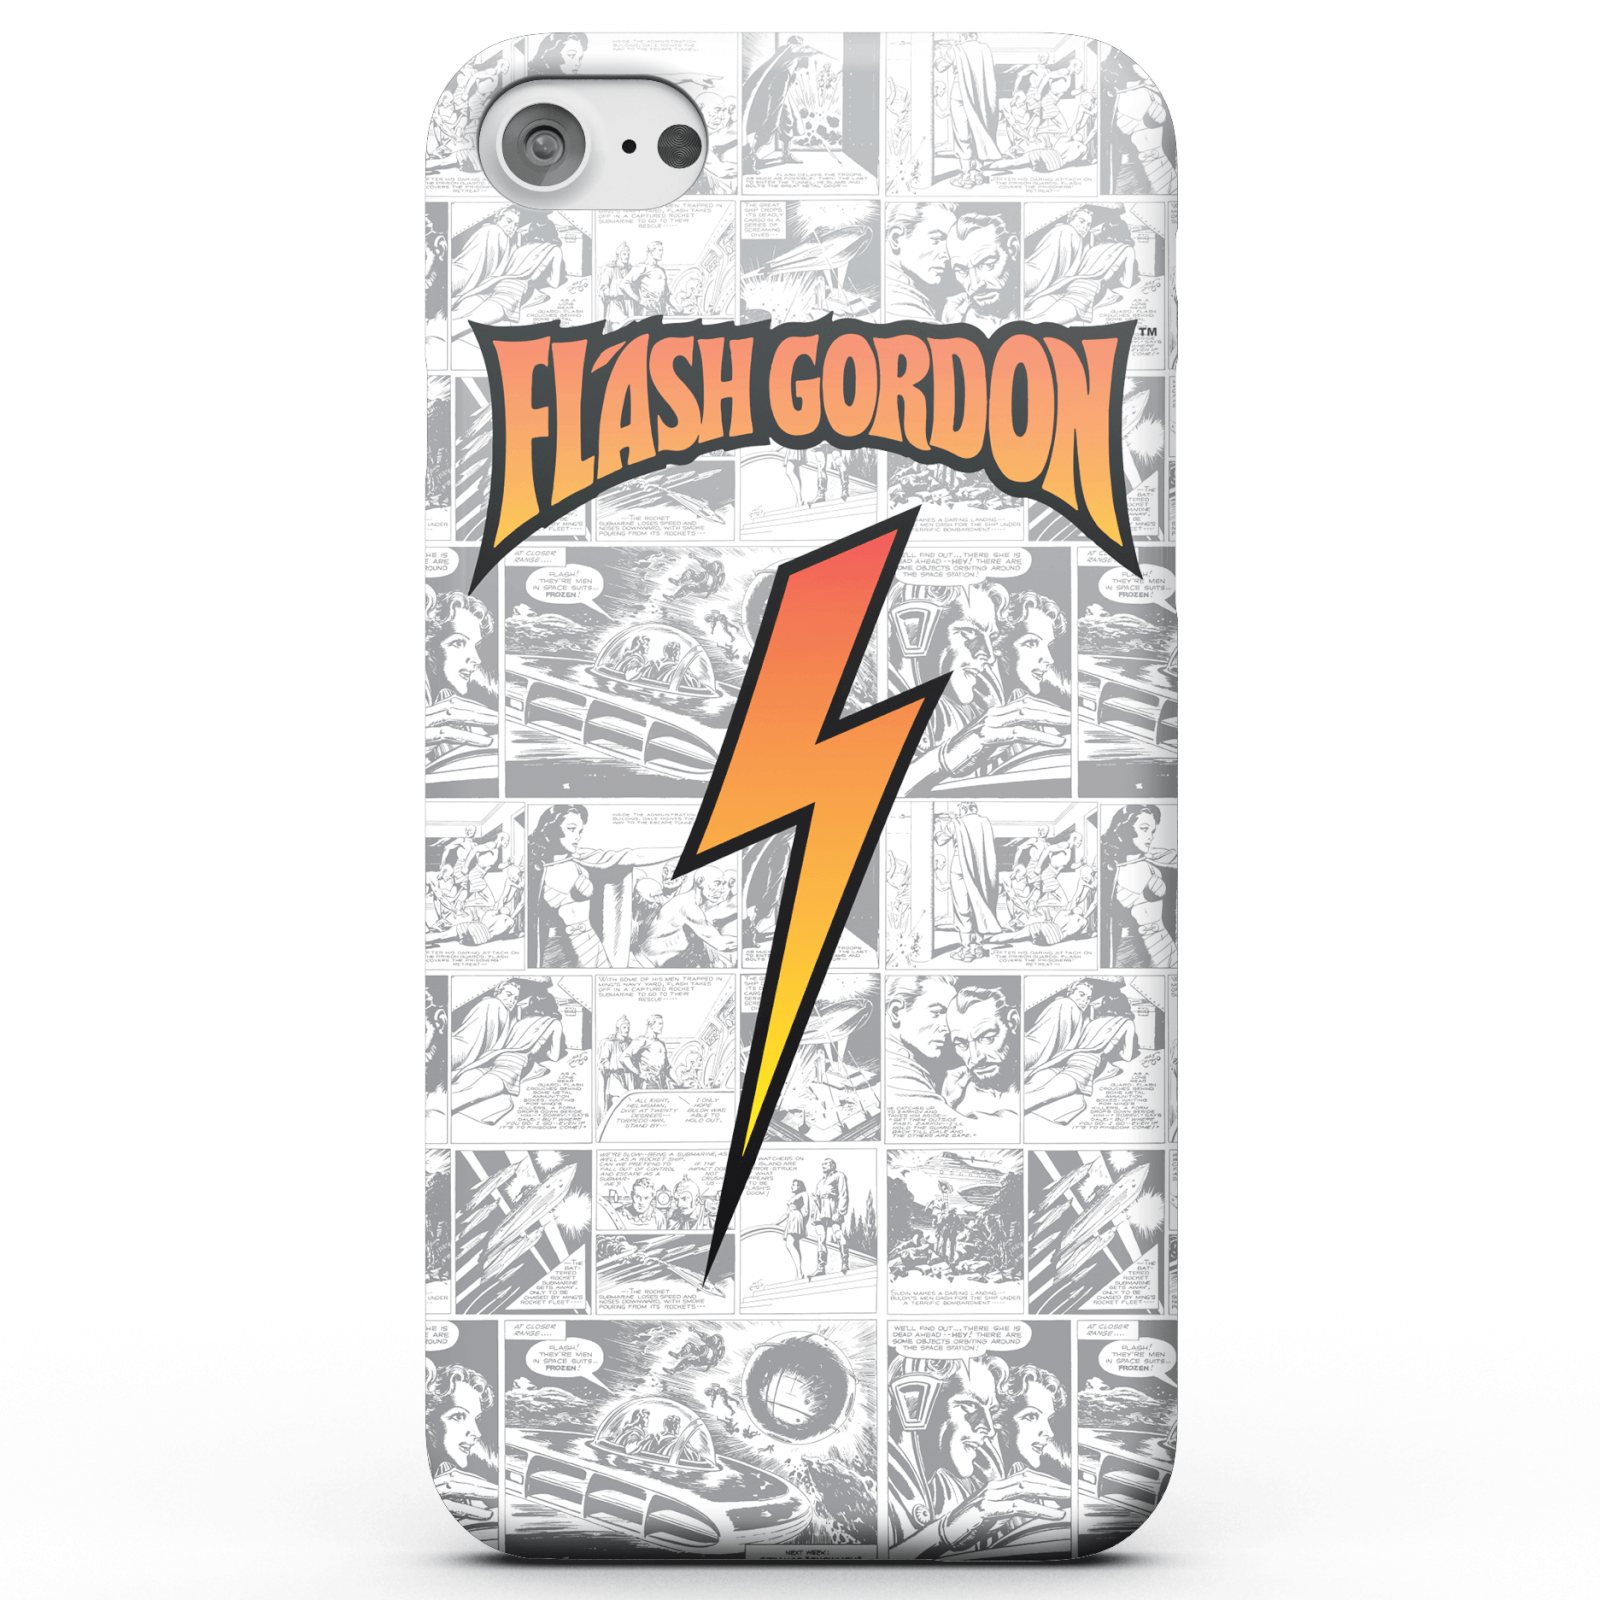 Flash Gordon Comic Strip Smartphone Hülle für iPhone und Android - Samsung S8 - Tough Hülle Glänzend